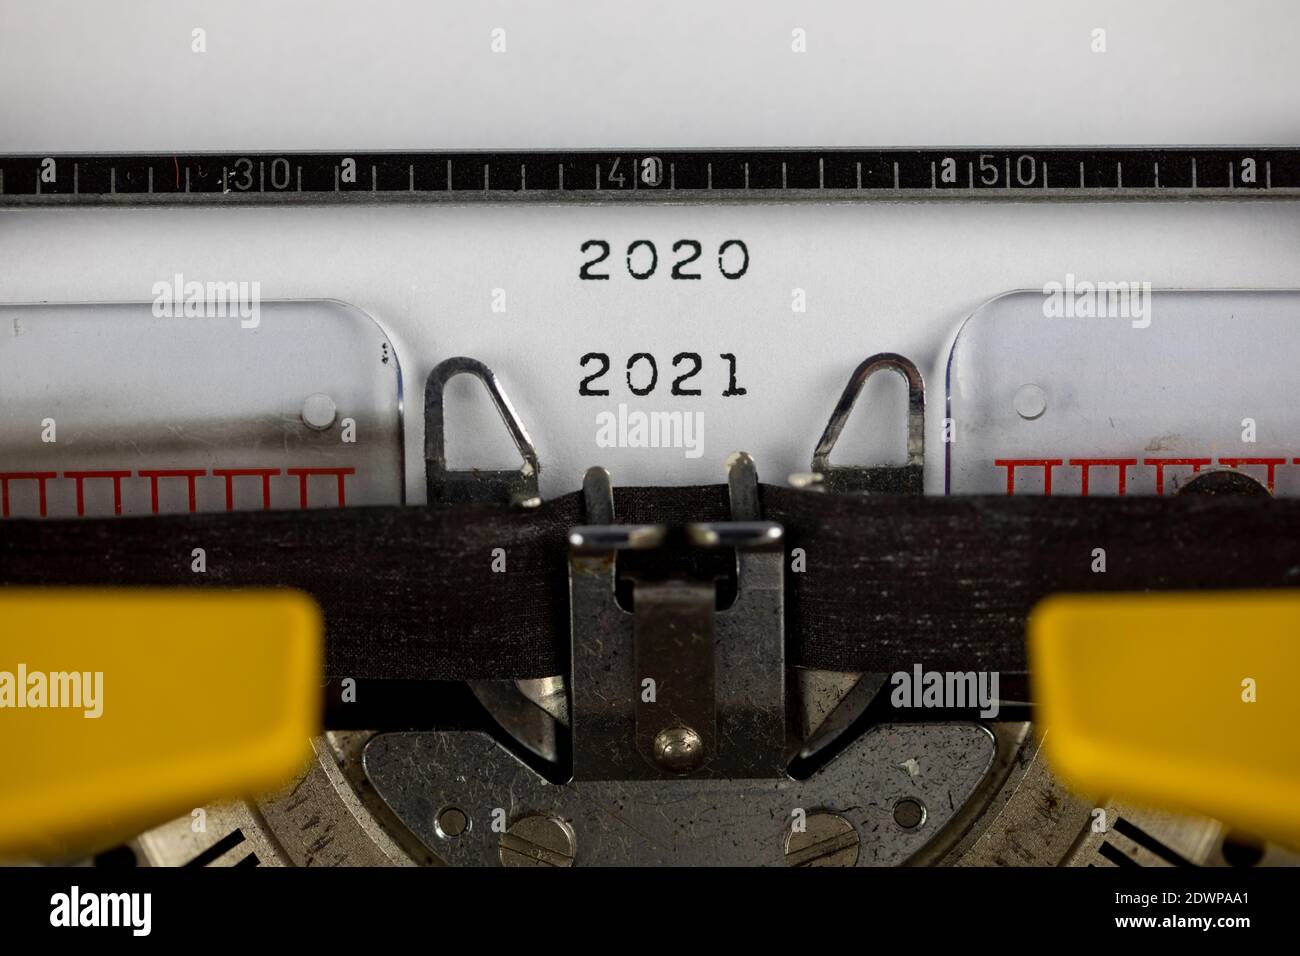 2021 - 2020 written on an old typewriter Stock Photo